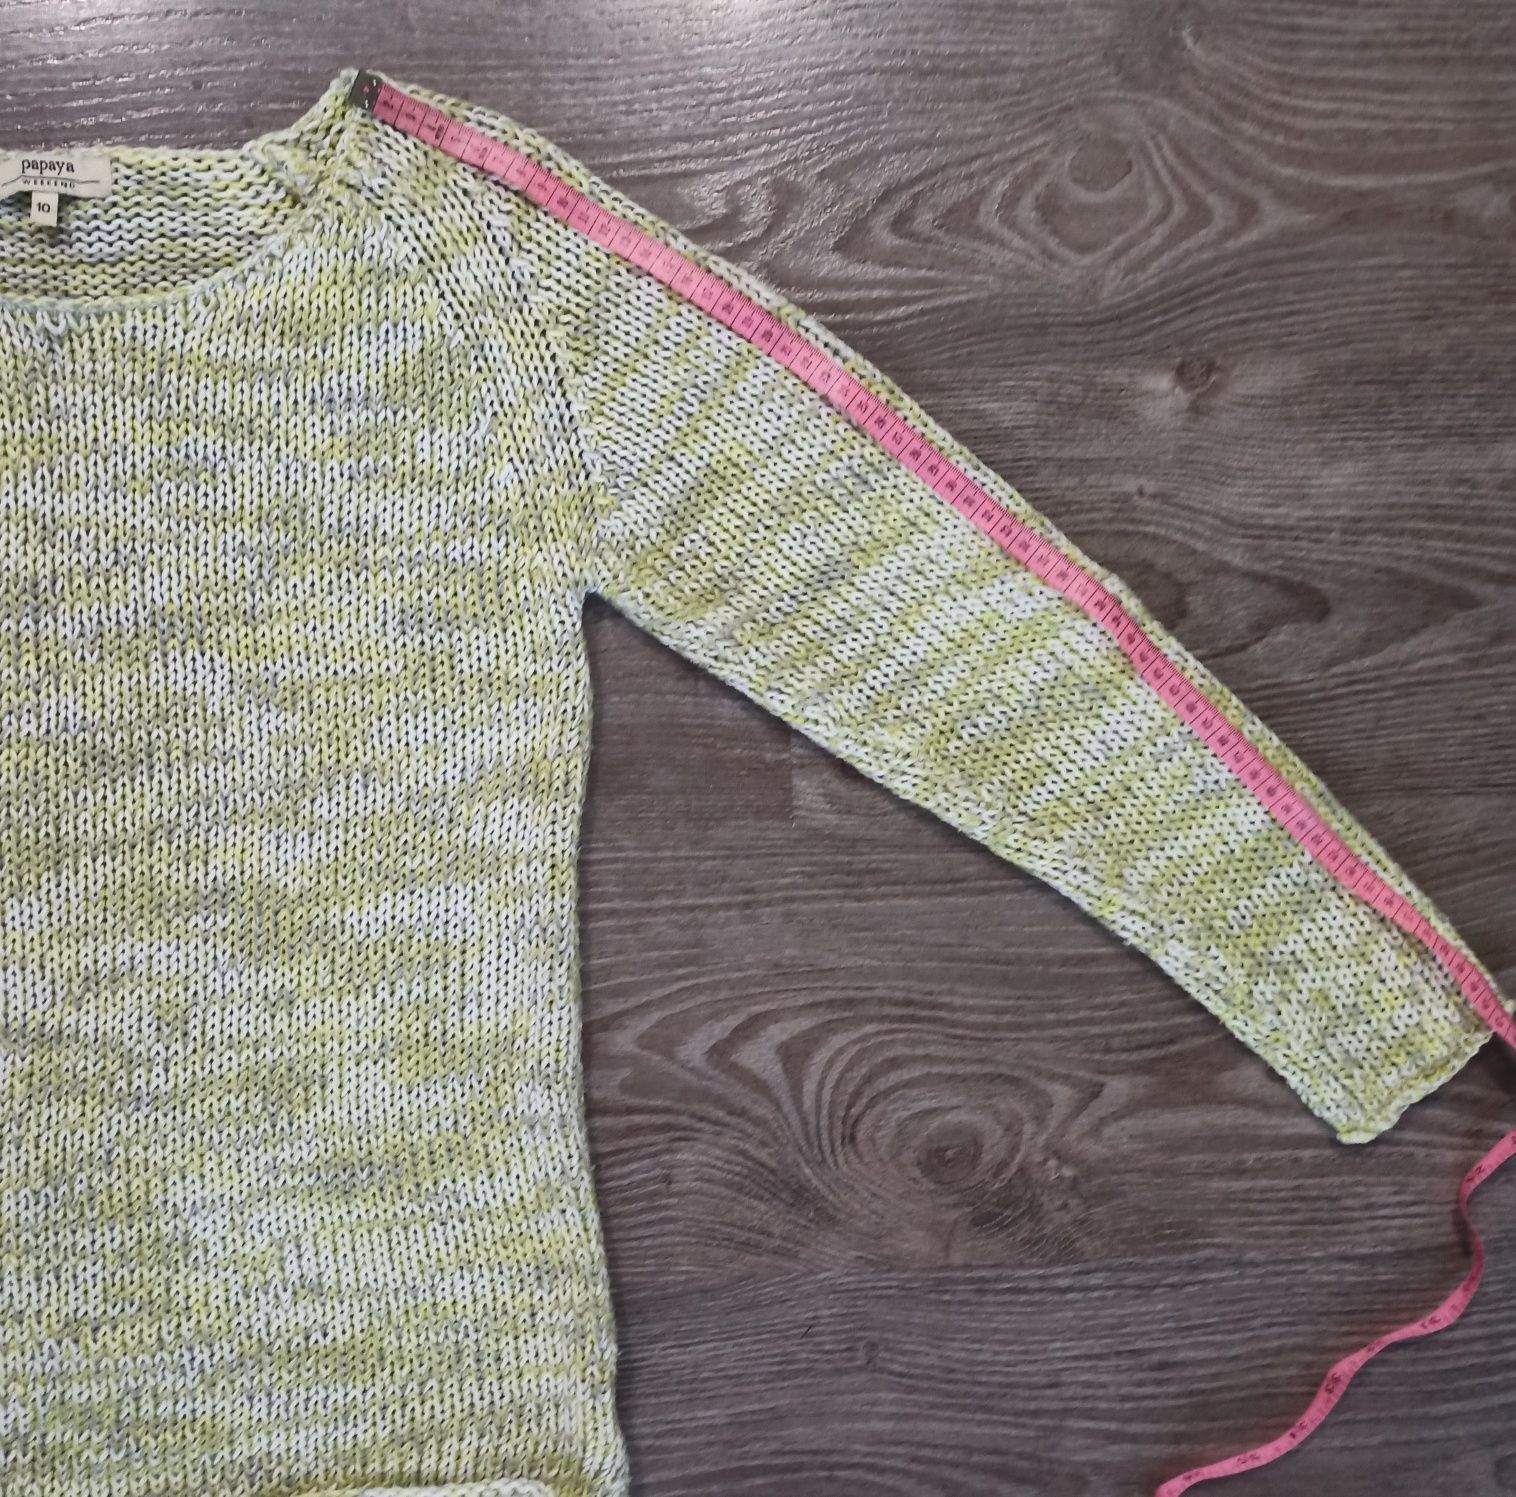 реглан Papaya, свитер вязанный, свитшот/ женский